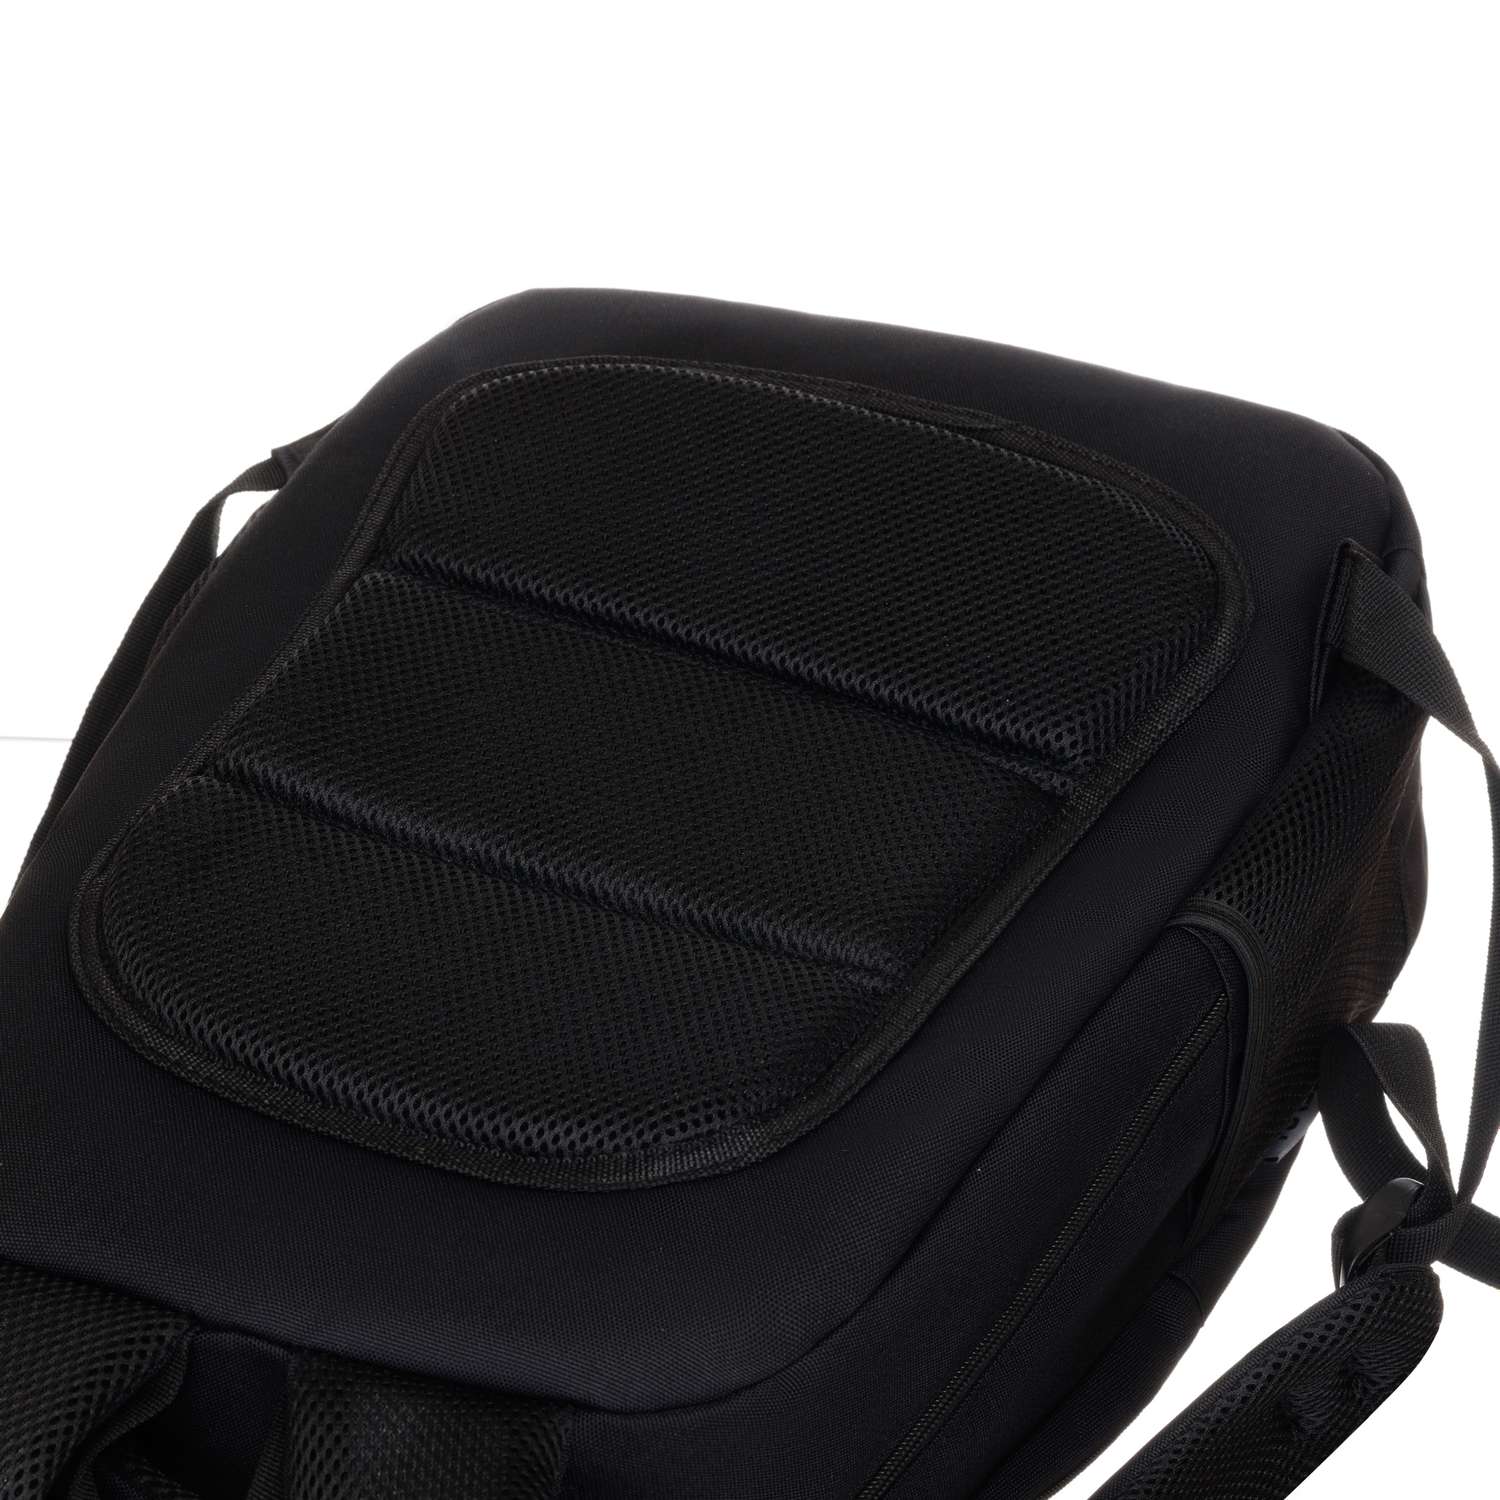 Рюкзак TORBER CLASS X черный и мешок для сменной обуви - фото 10